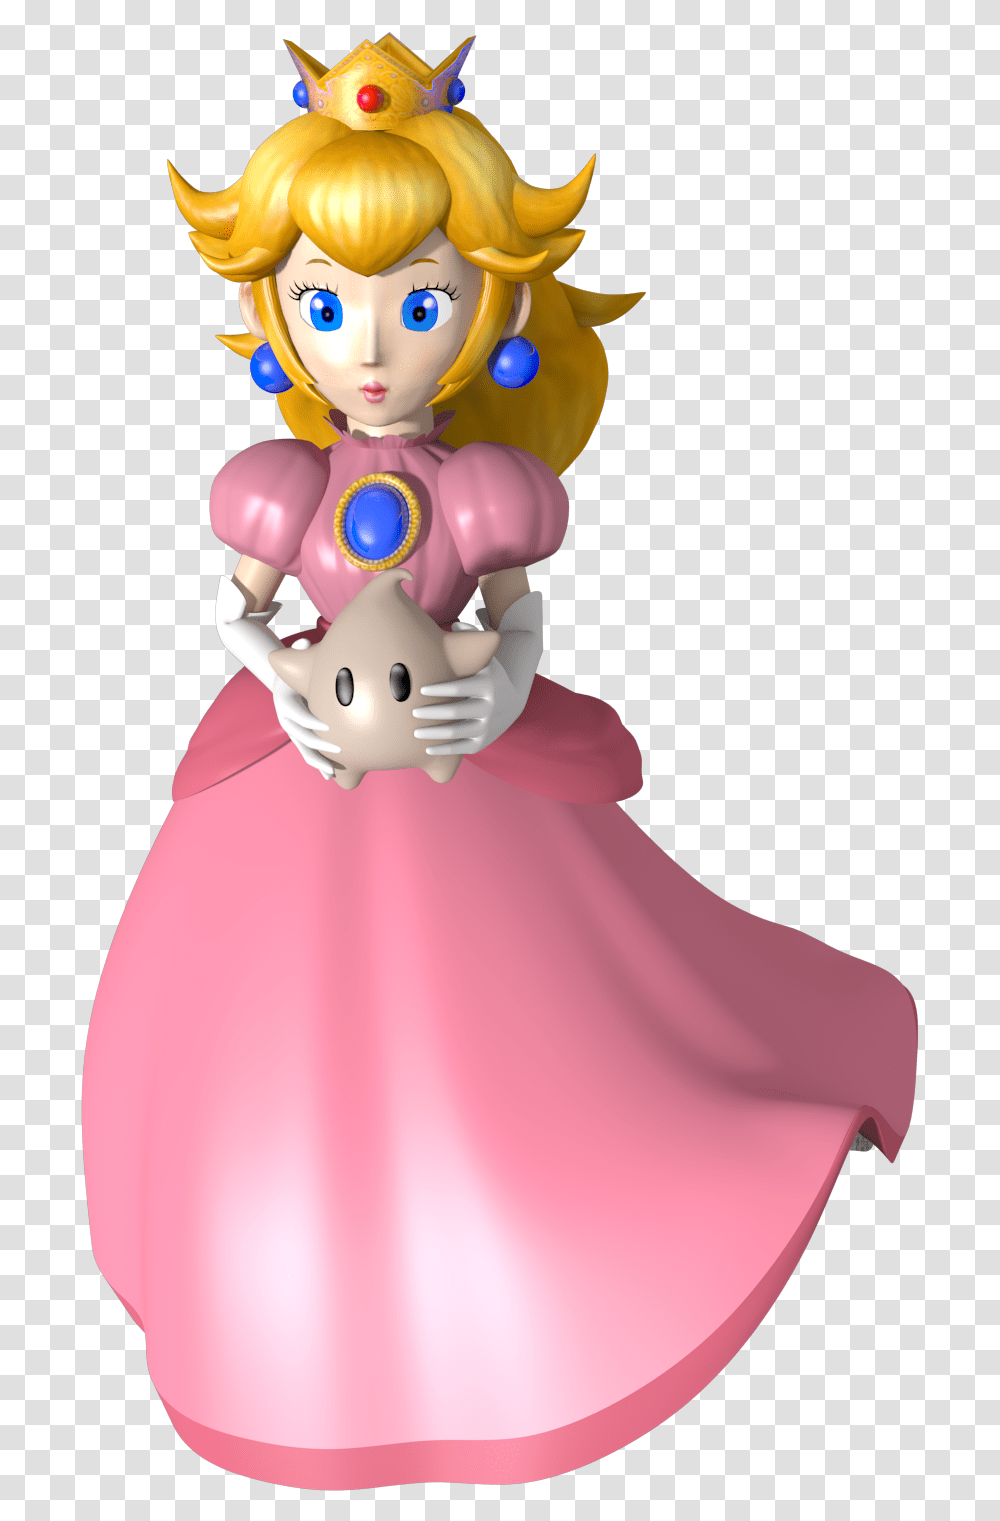 Princess Peach With Luma Princess Peach, Figurine, Apparel, Doll Transparent Png